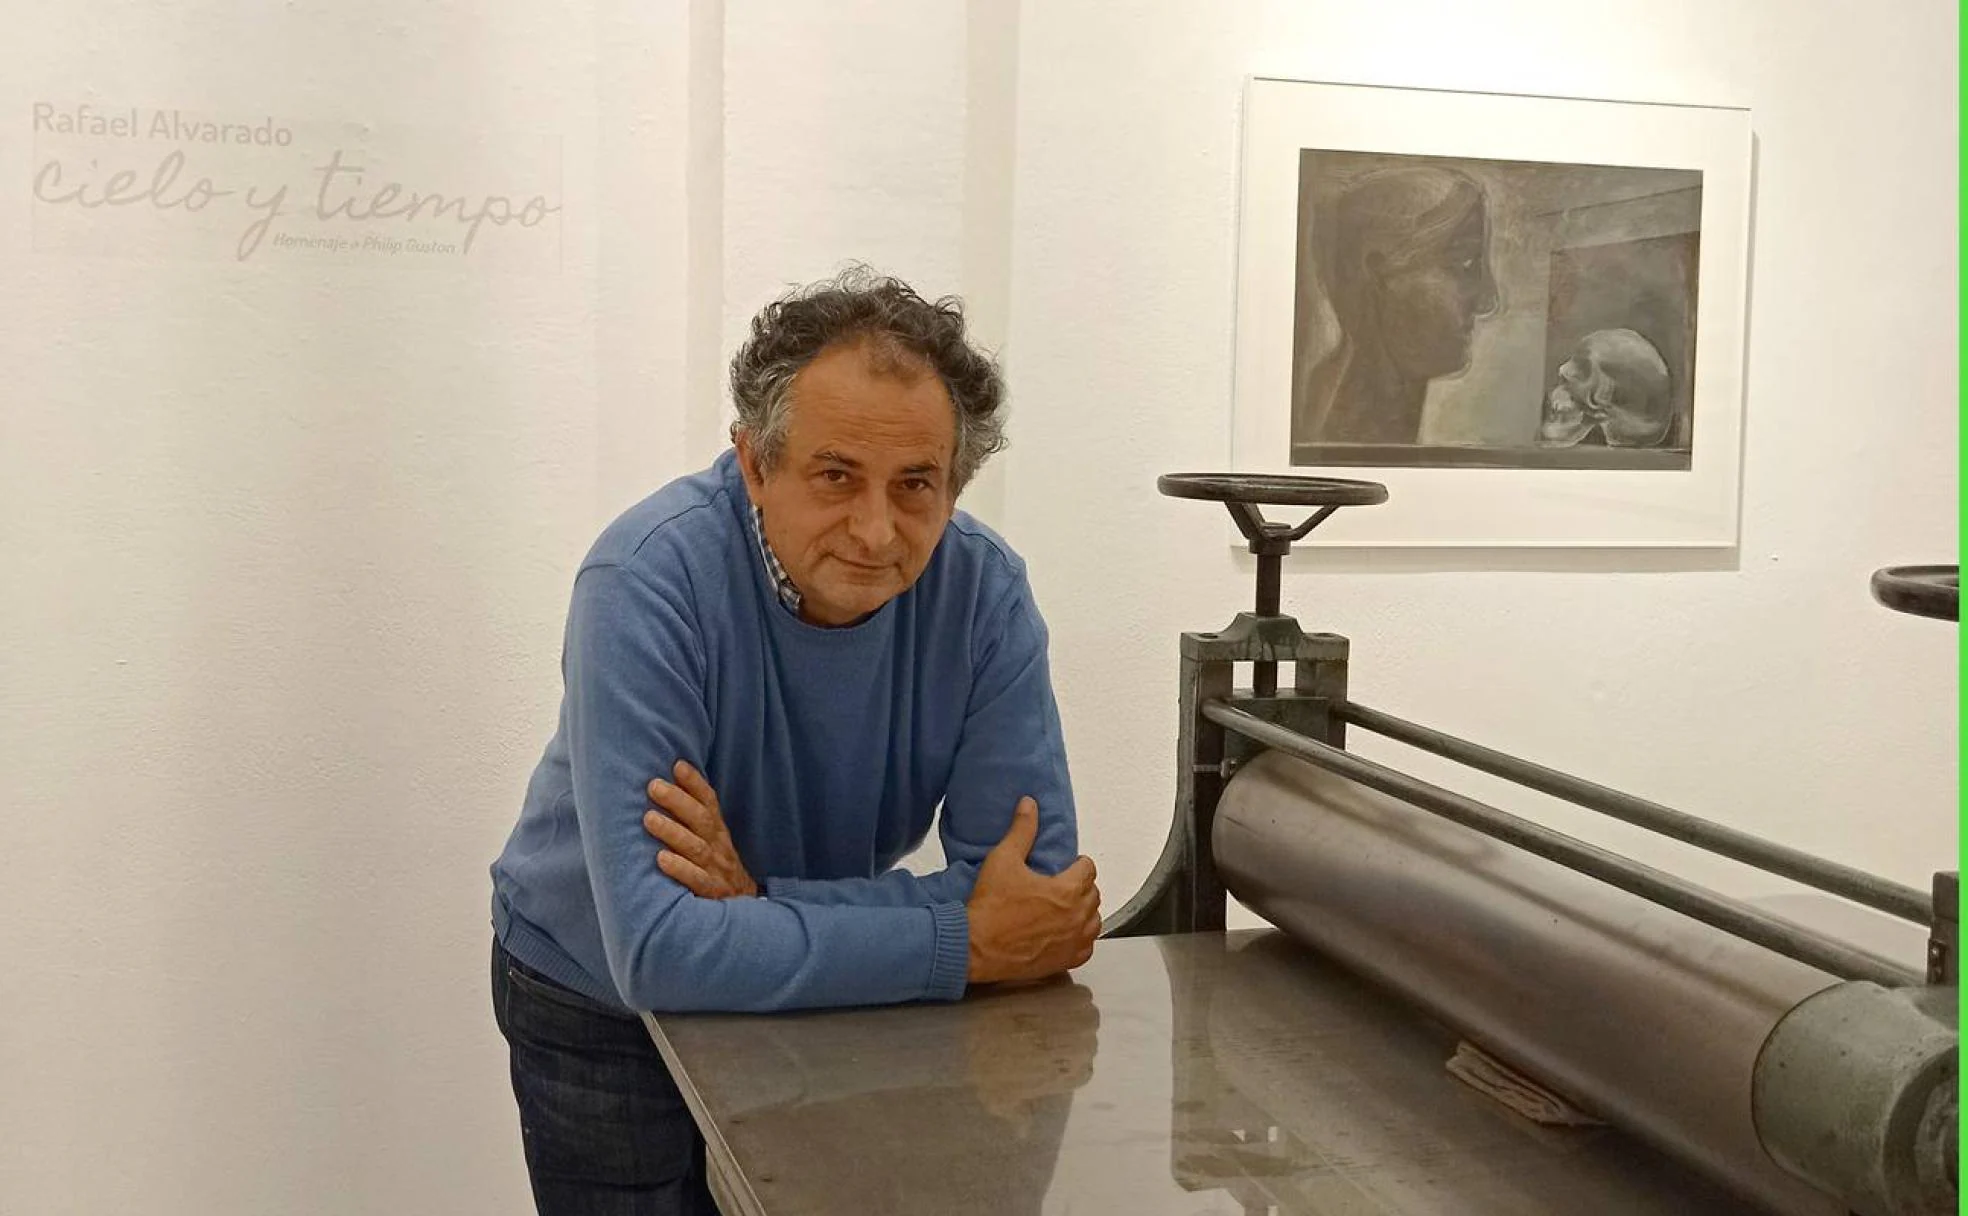 Rafael Alvarado aborda su proceso creativo en la exposición 'Cielo y tiempo' del Taller Gravura. 